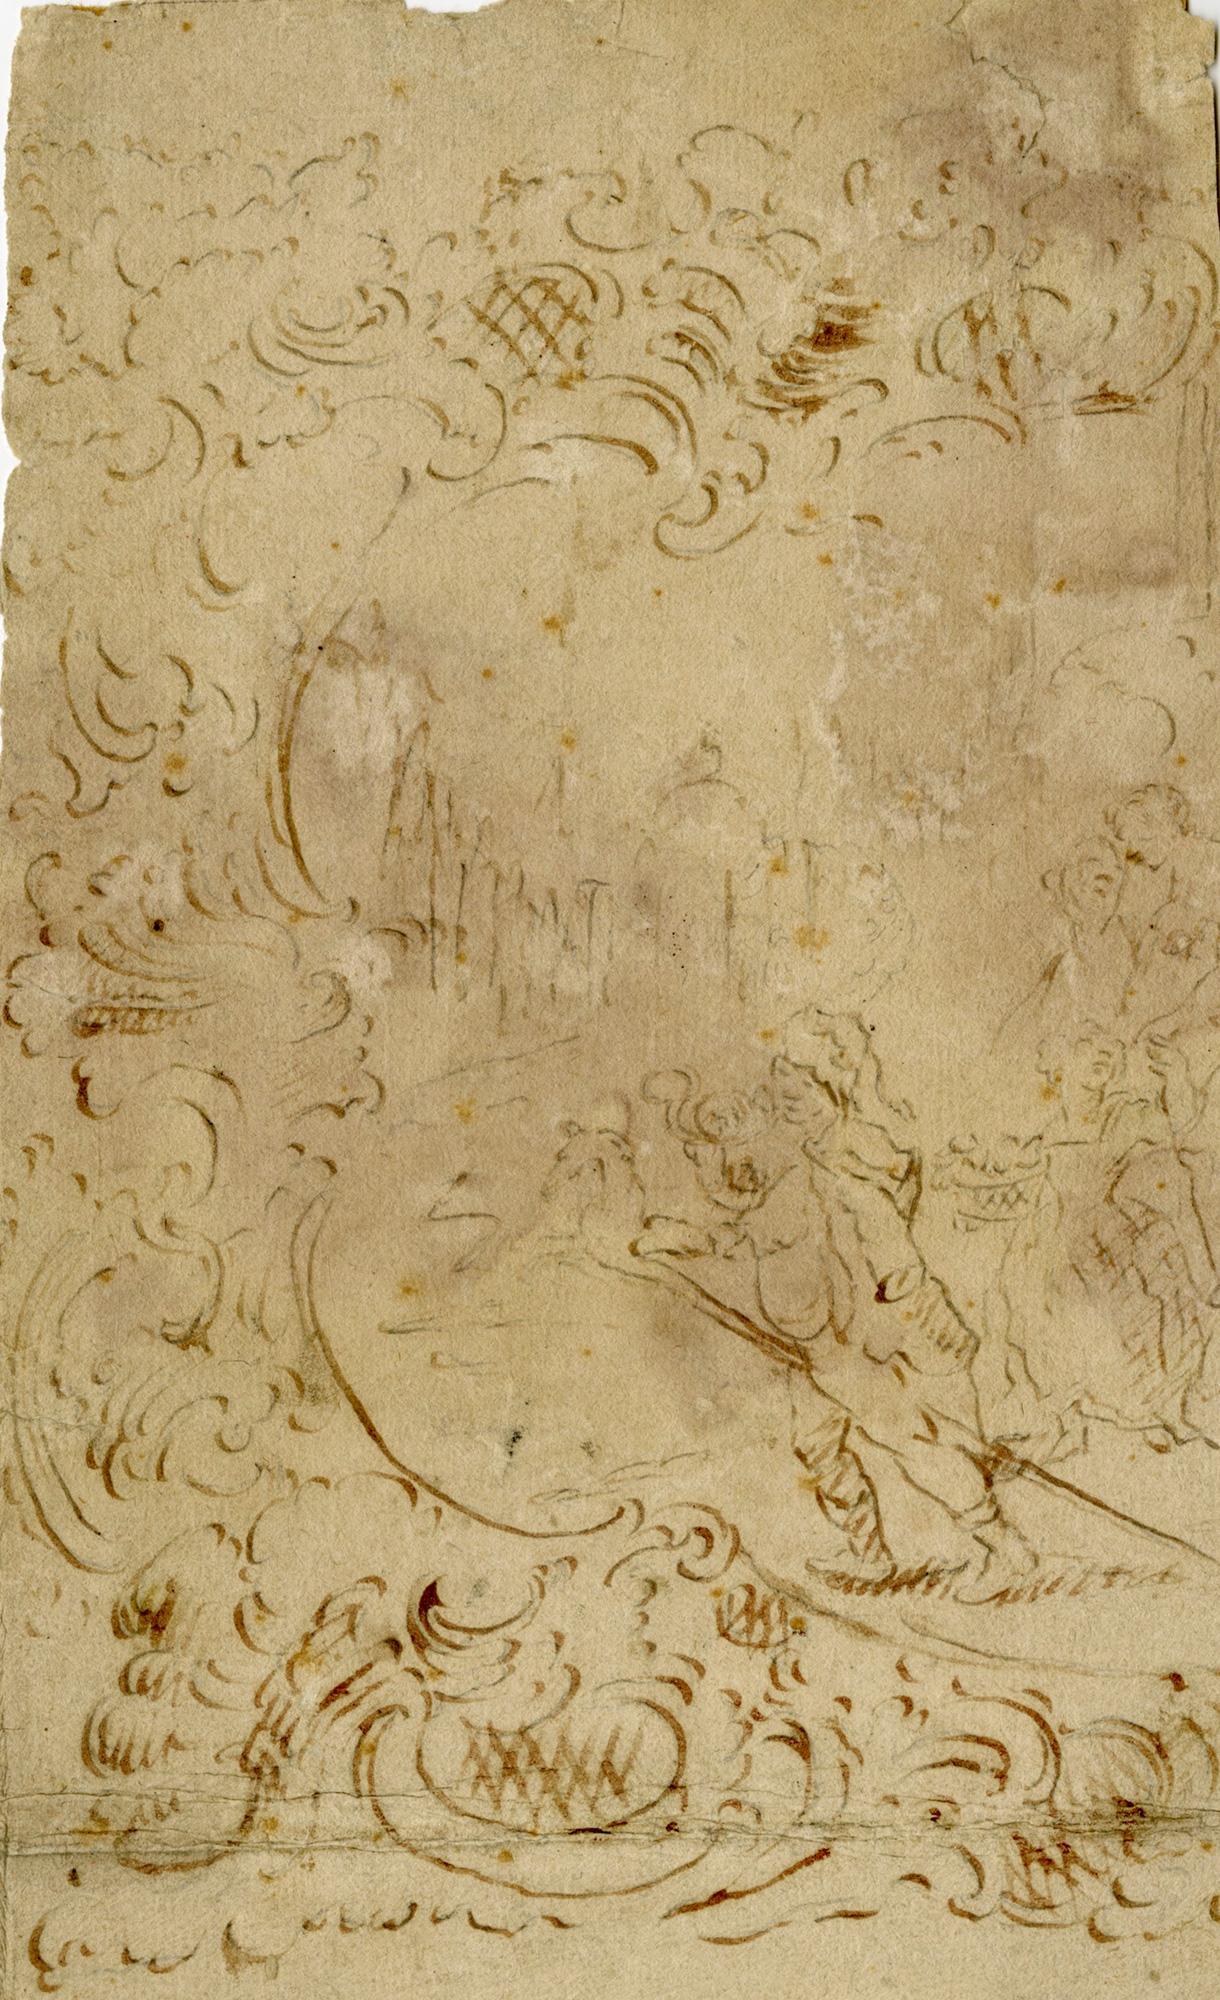 Entwurf für ein Theaterfresko mit ausgefallener Gipsarbeit – frühes französisches S-Stil des 18. Jahrhunderts